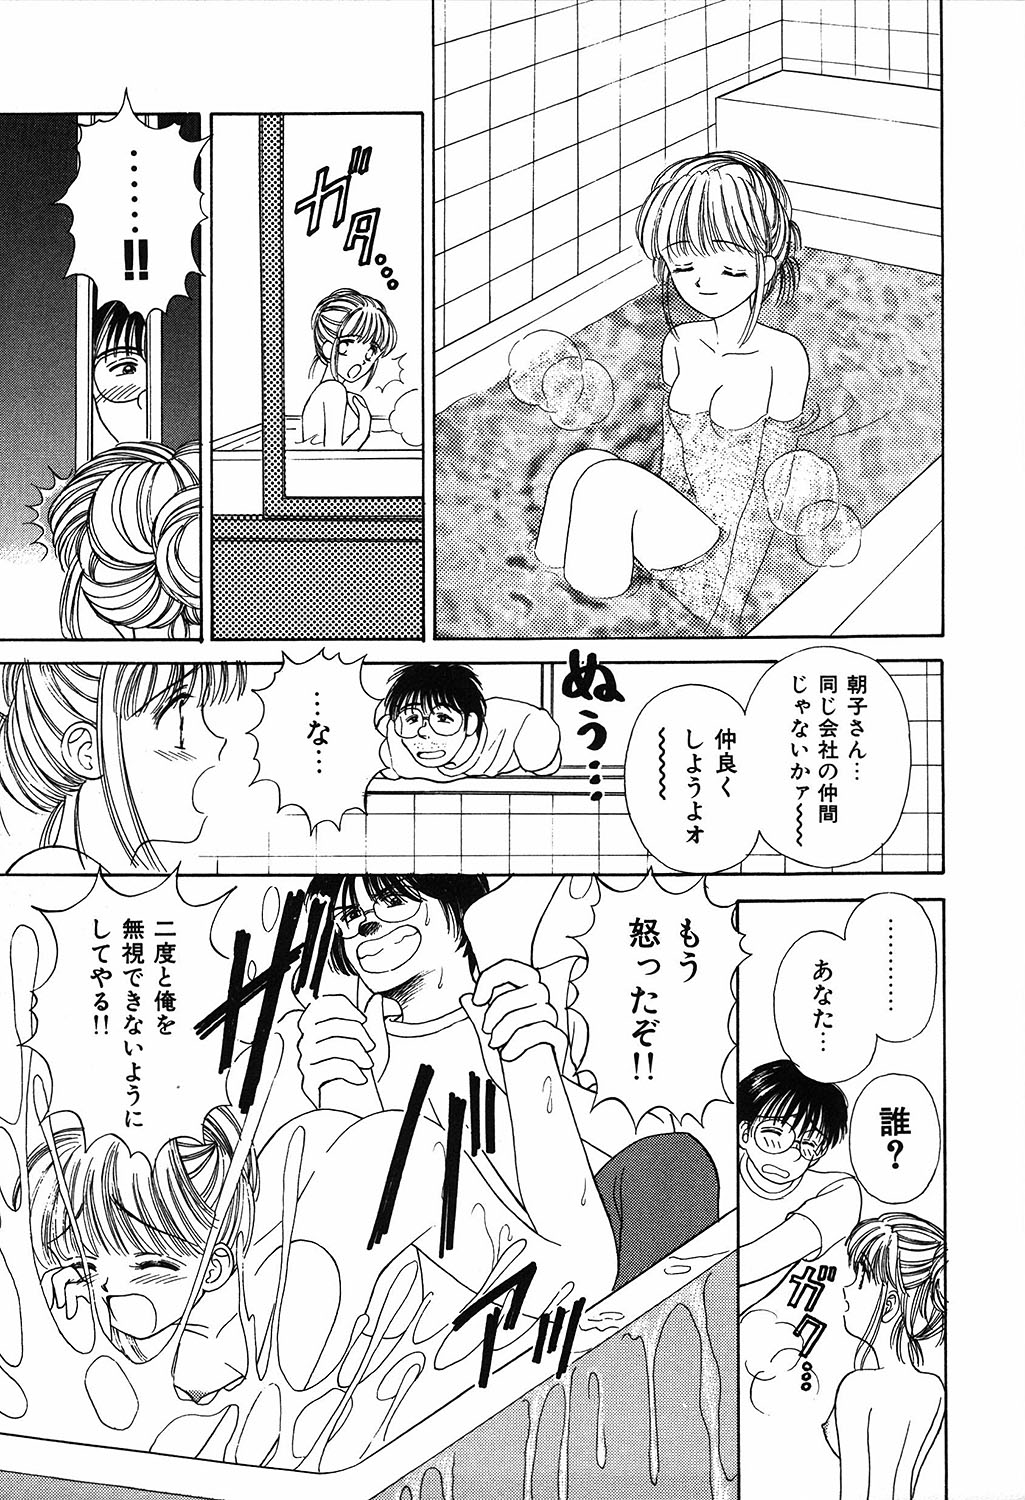 [Ayumi] Daisuki page 27 full